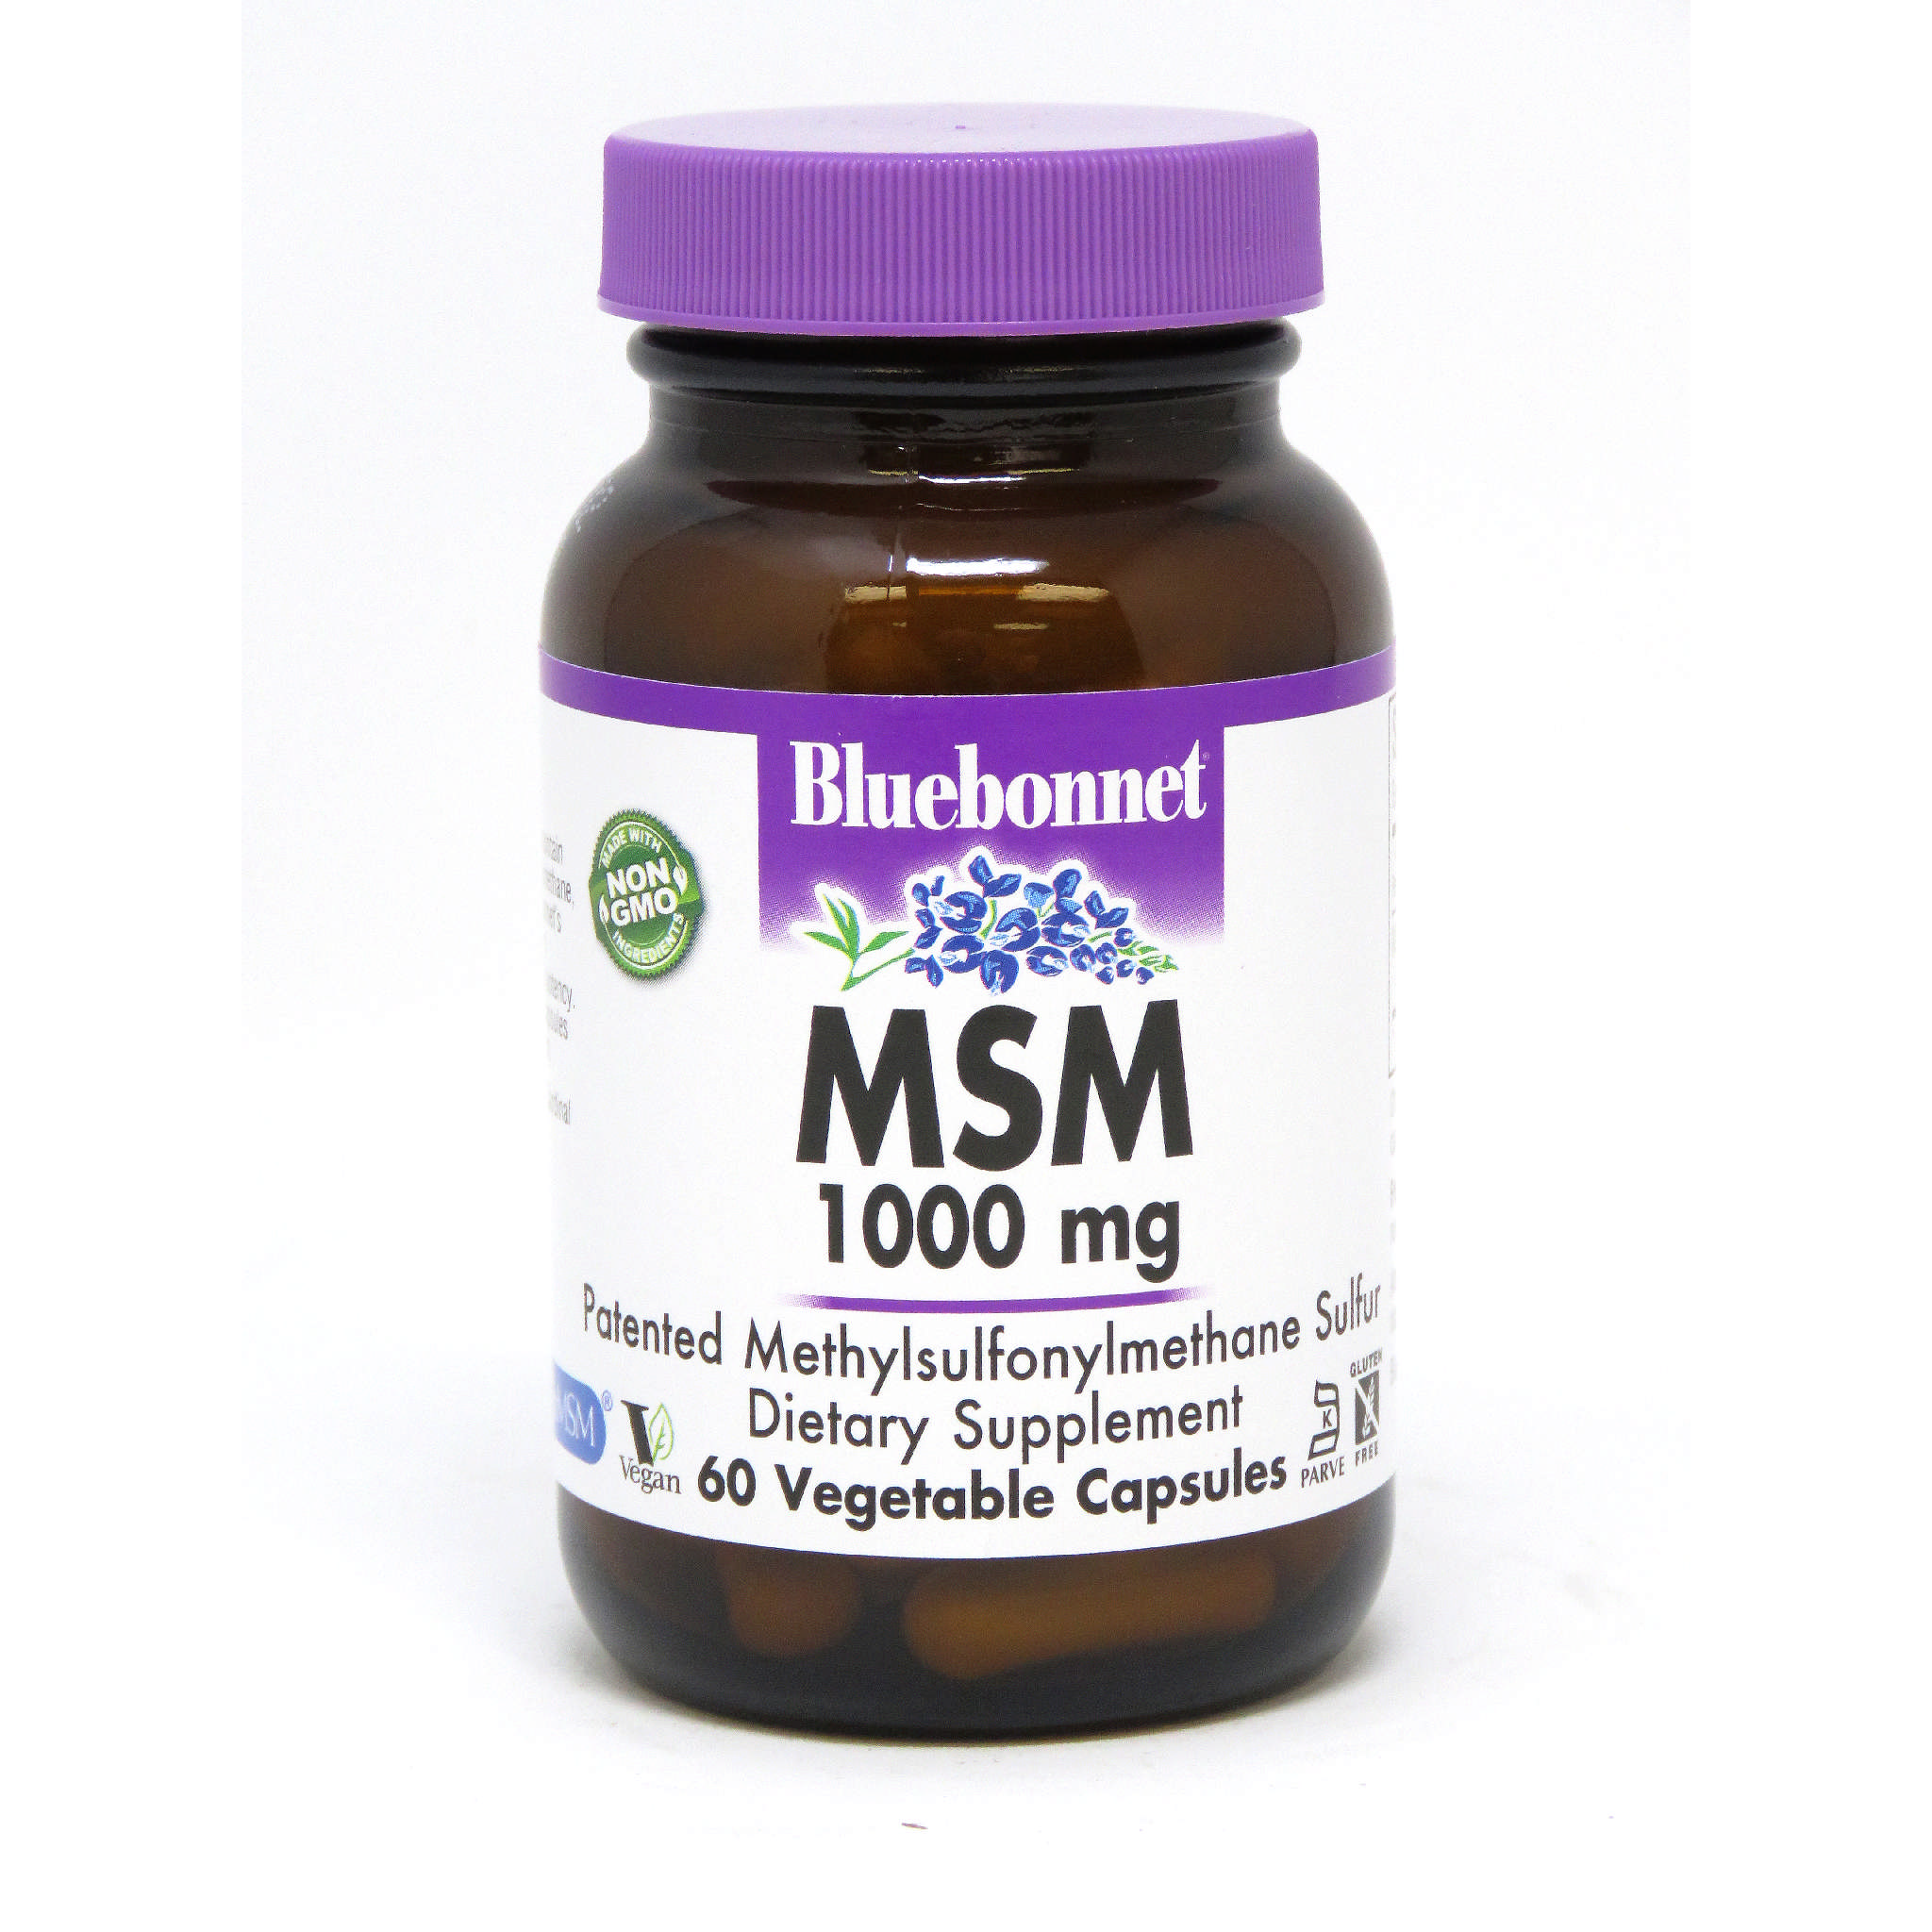 Bluebonnet - Msm 1000 mg